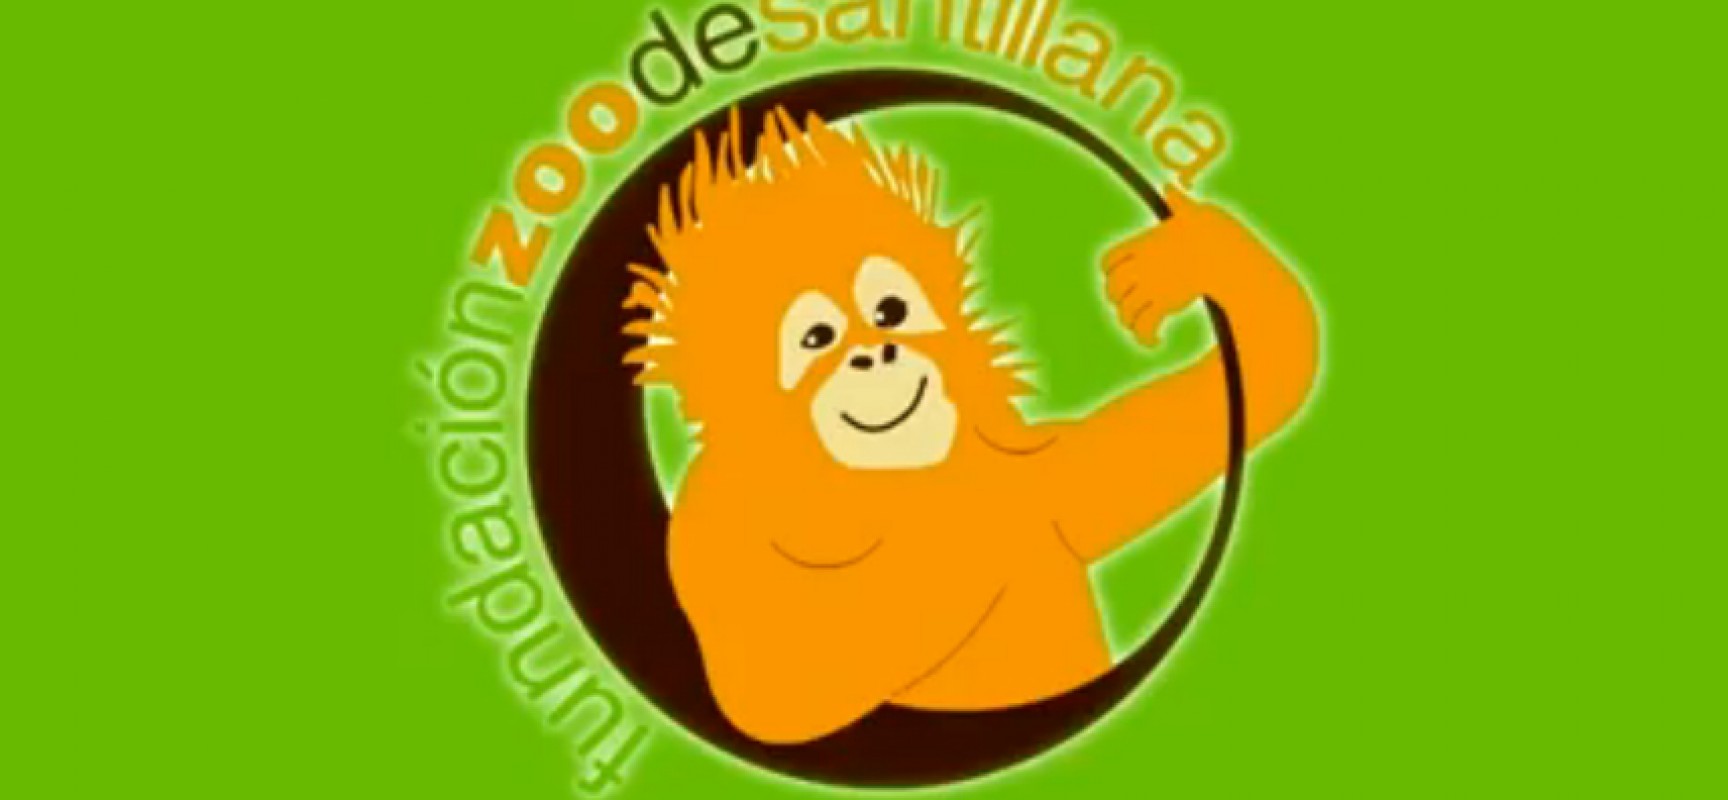 El Zoo de Santillana se suma a la campaña abierta en internet del reto #IceBucketChallenge.